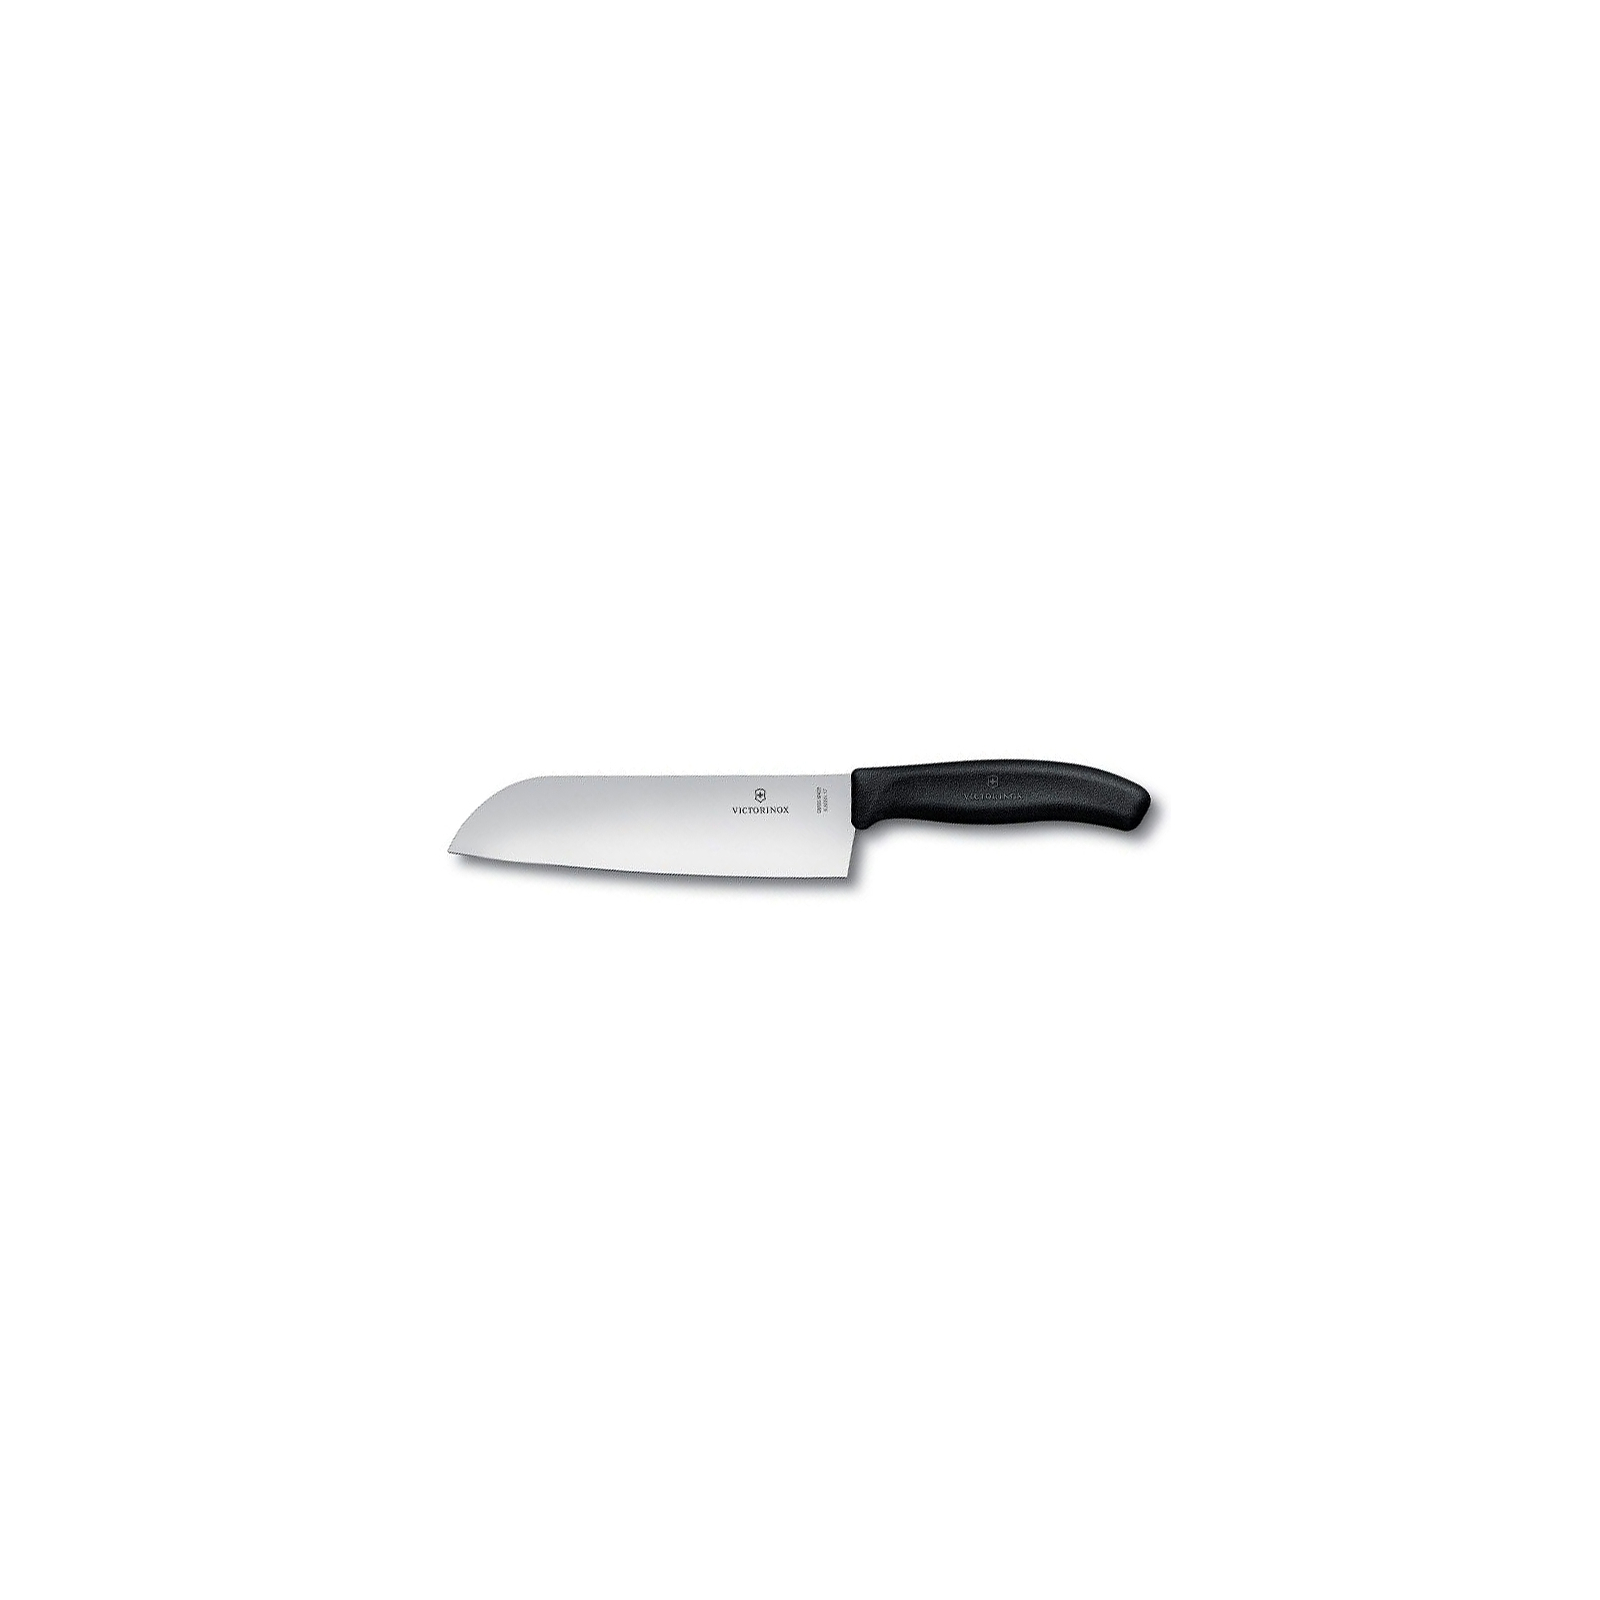 Кухонный нож Victorinox SwissClassic сантоку 17 см, черный (6.8503.17B)